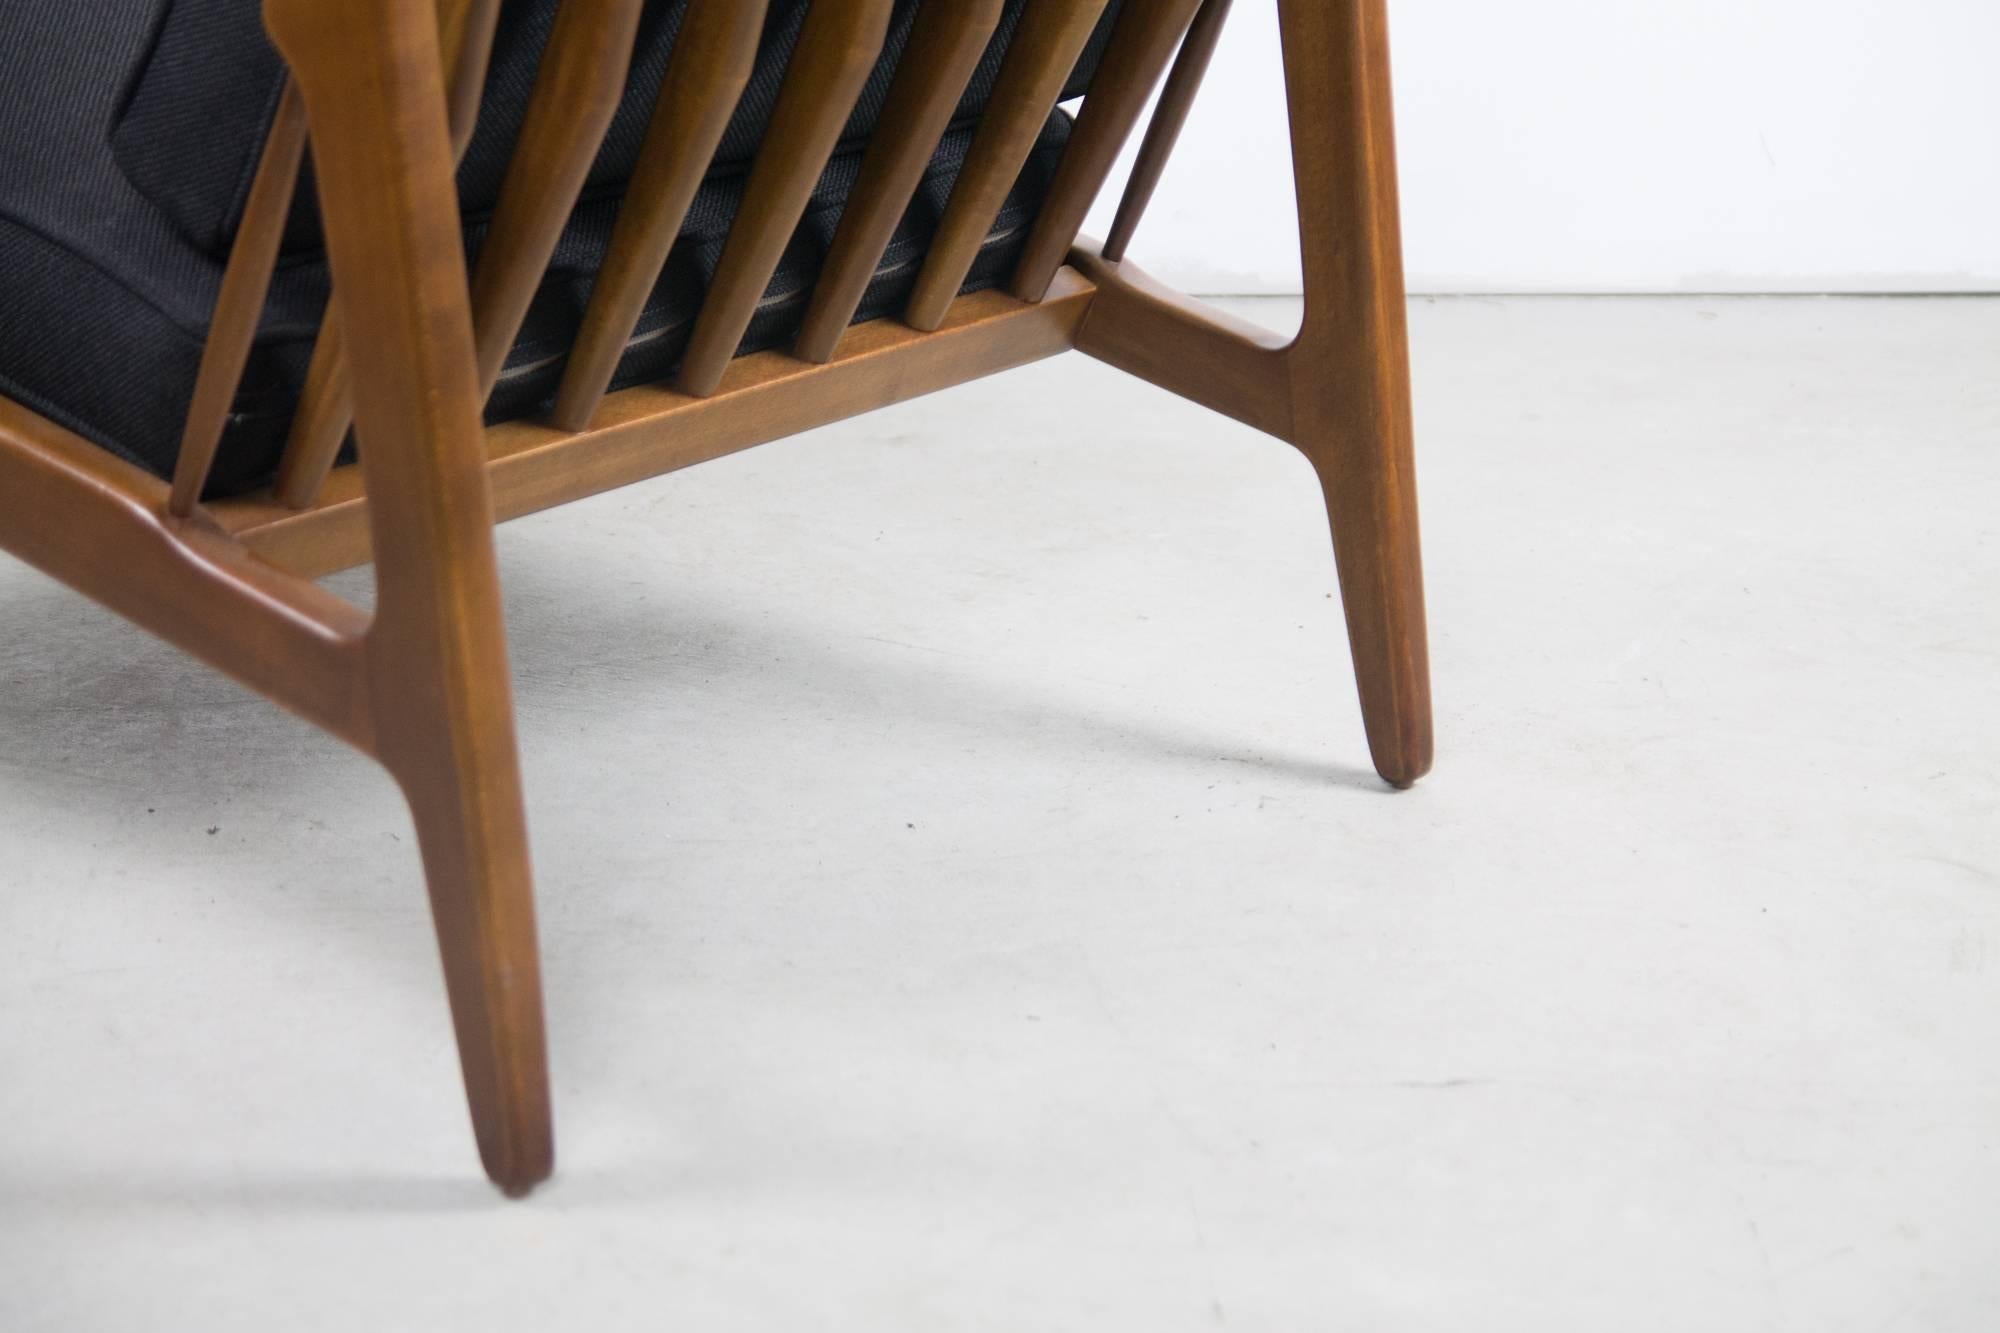 Une chaise pantoufle moins connue d'Ib Kofod Larsen. La hauteur et la largeur de ce fauteuil permettent de s'allonger confortablement.